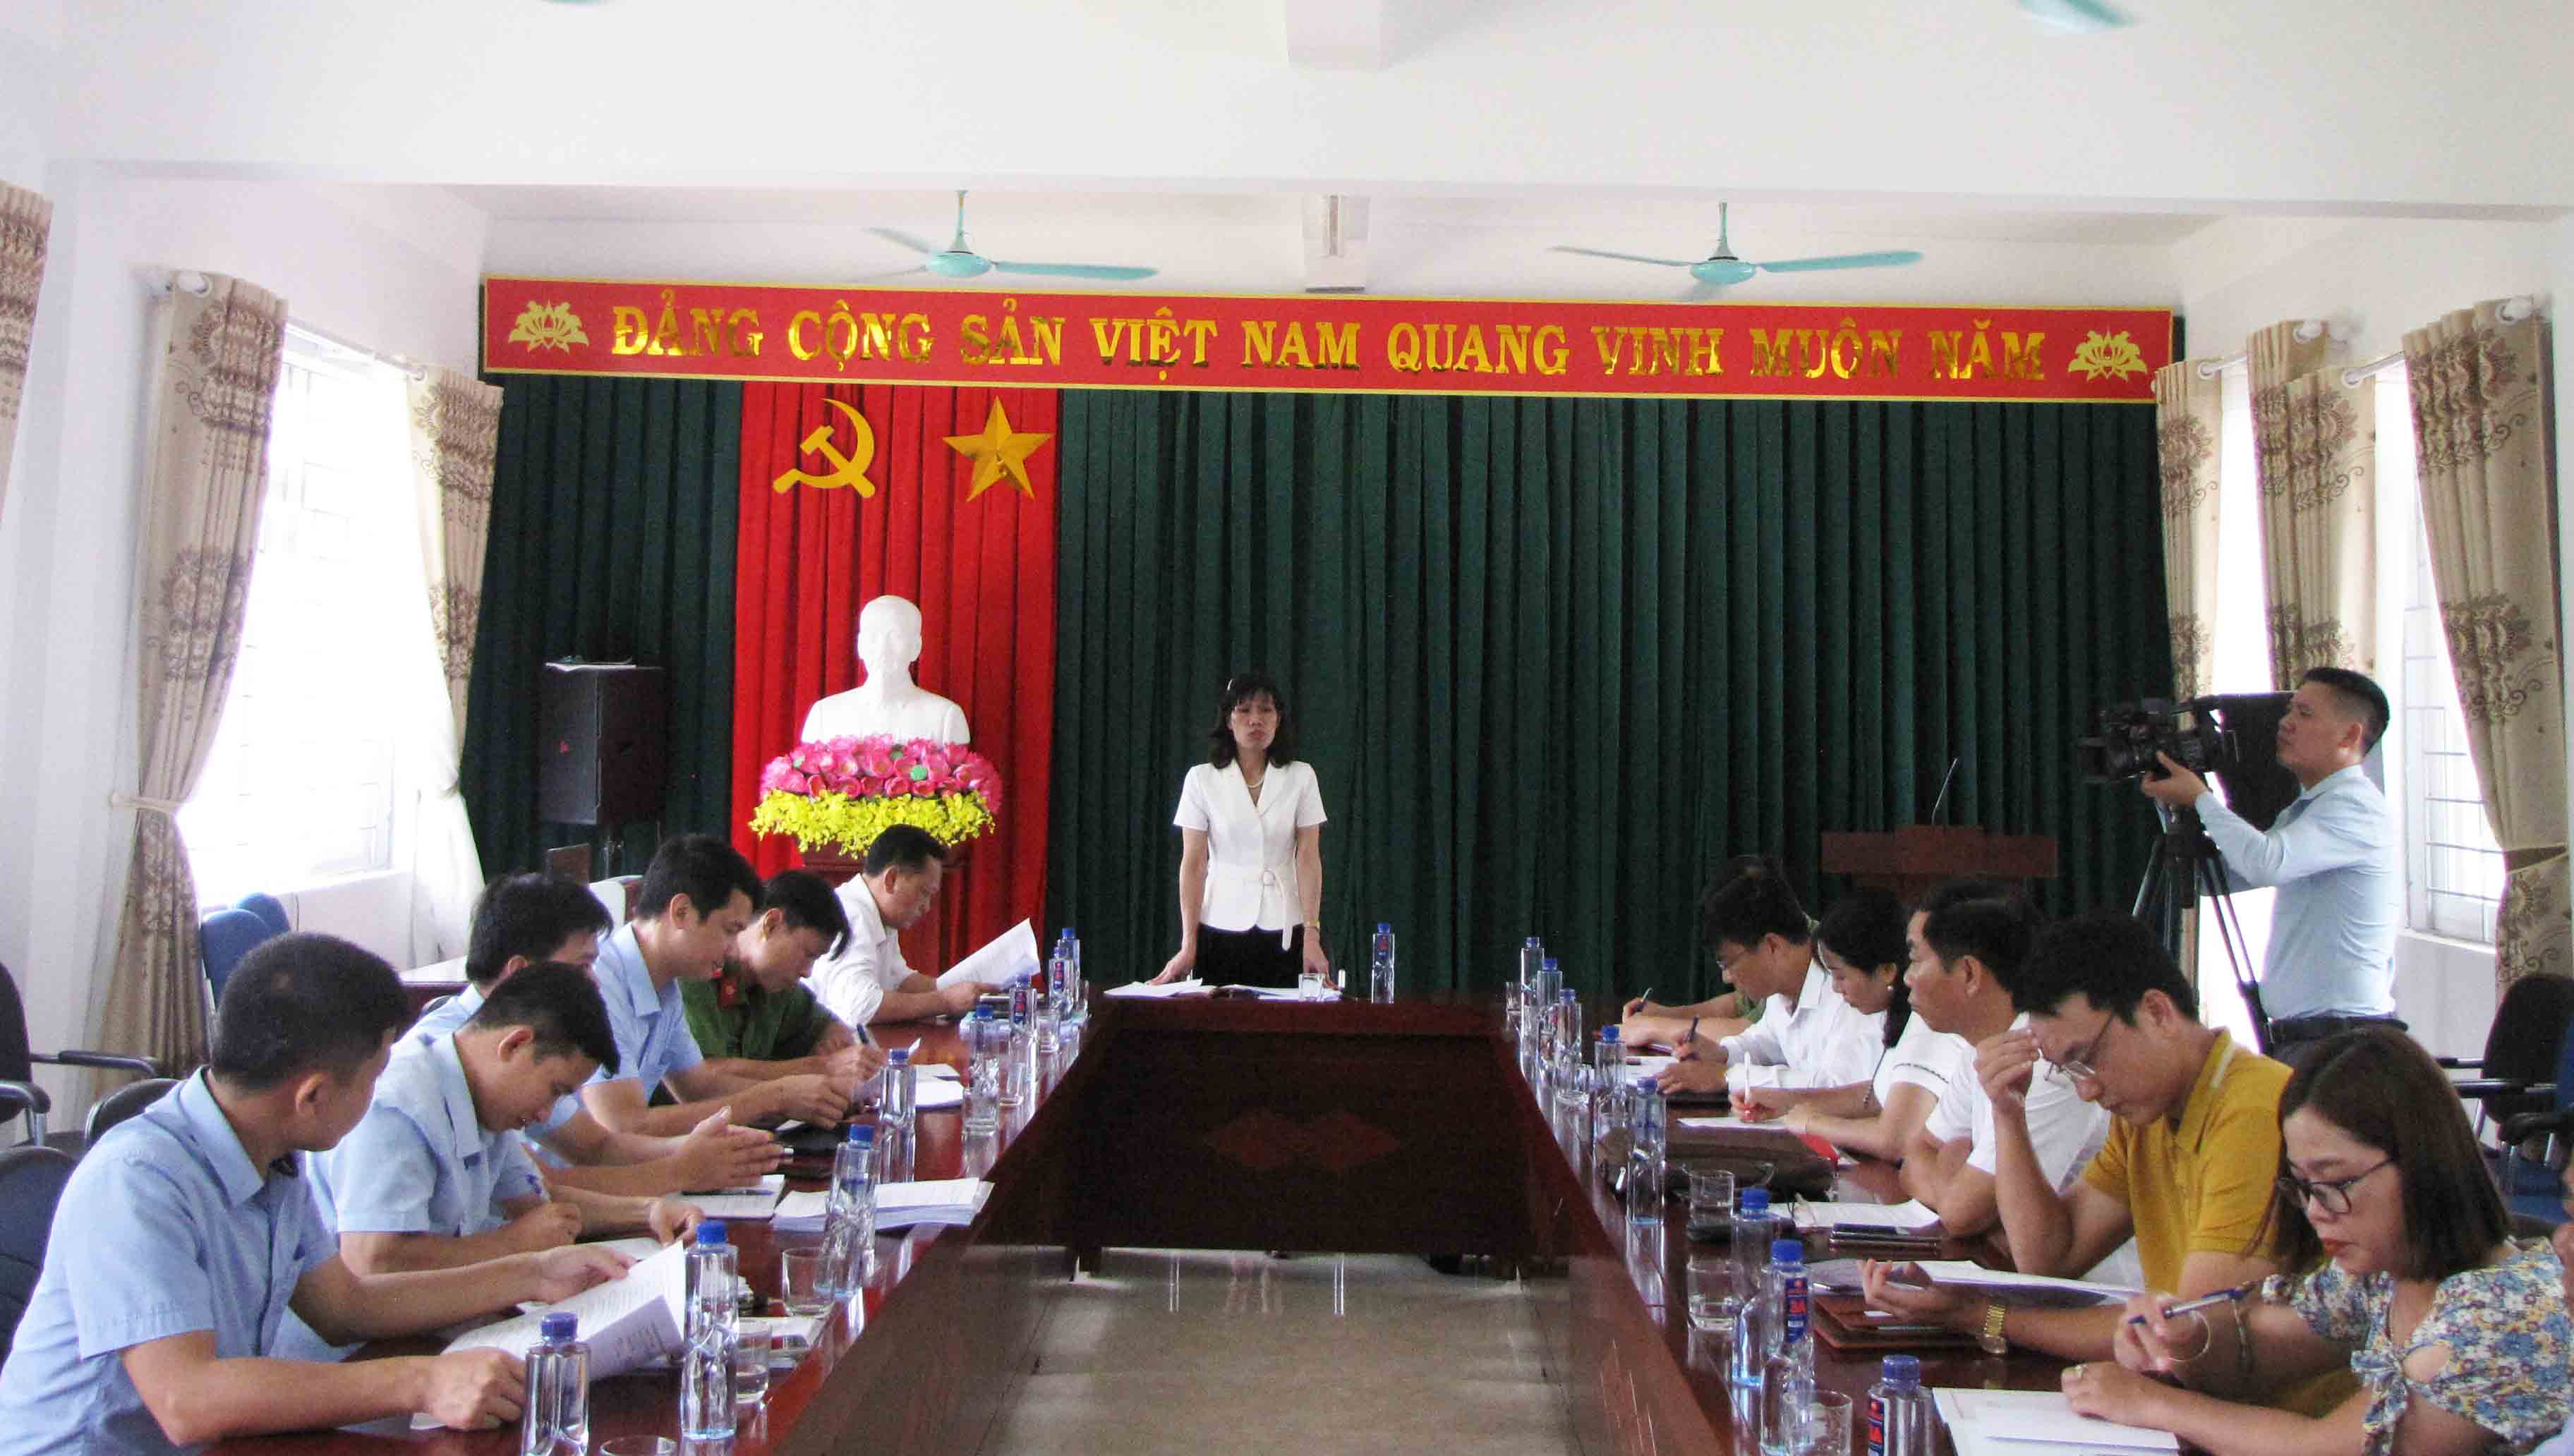 Đồng chí Nghiêm Thị Kim Huê – Phó Giám đốc Sở Giáo dục và Đào tạo, Phó trưởng Ban Chỉ đạo kỳ thi tốt nghiệp THPT Quốc gia tỉnh phat biểu chỉ đạo tại buổi làm việc